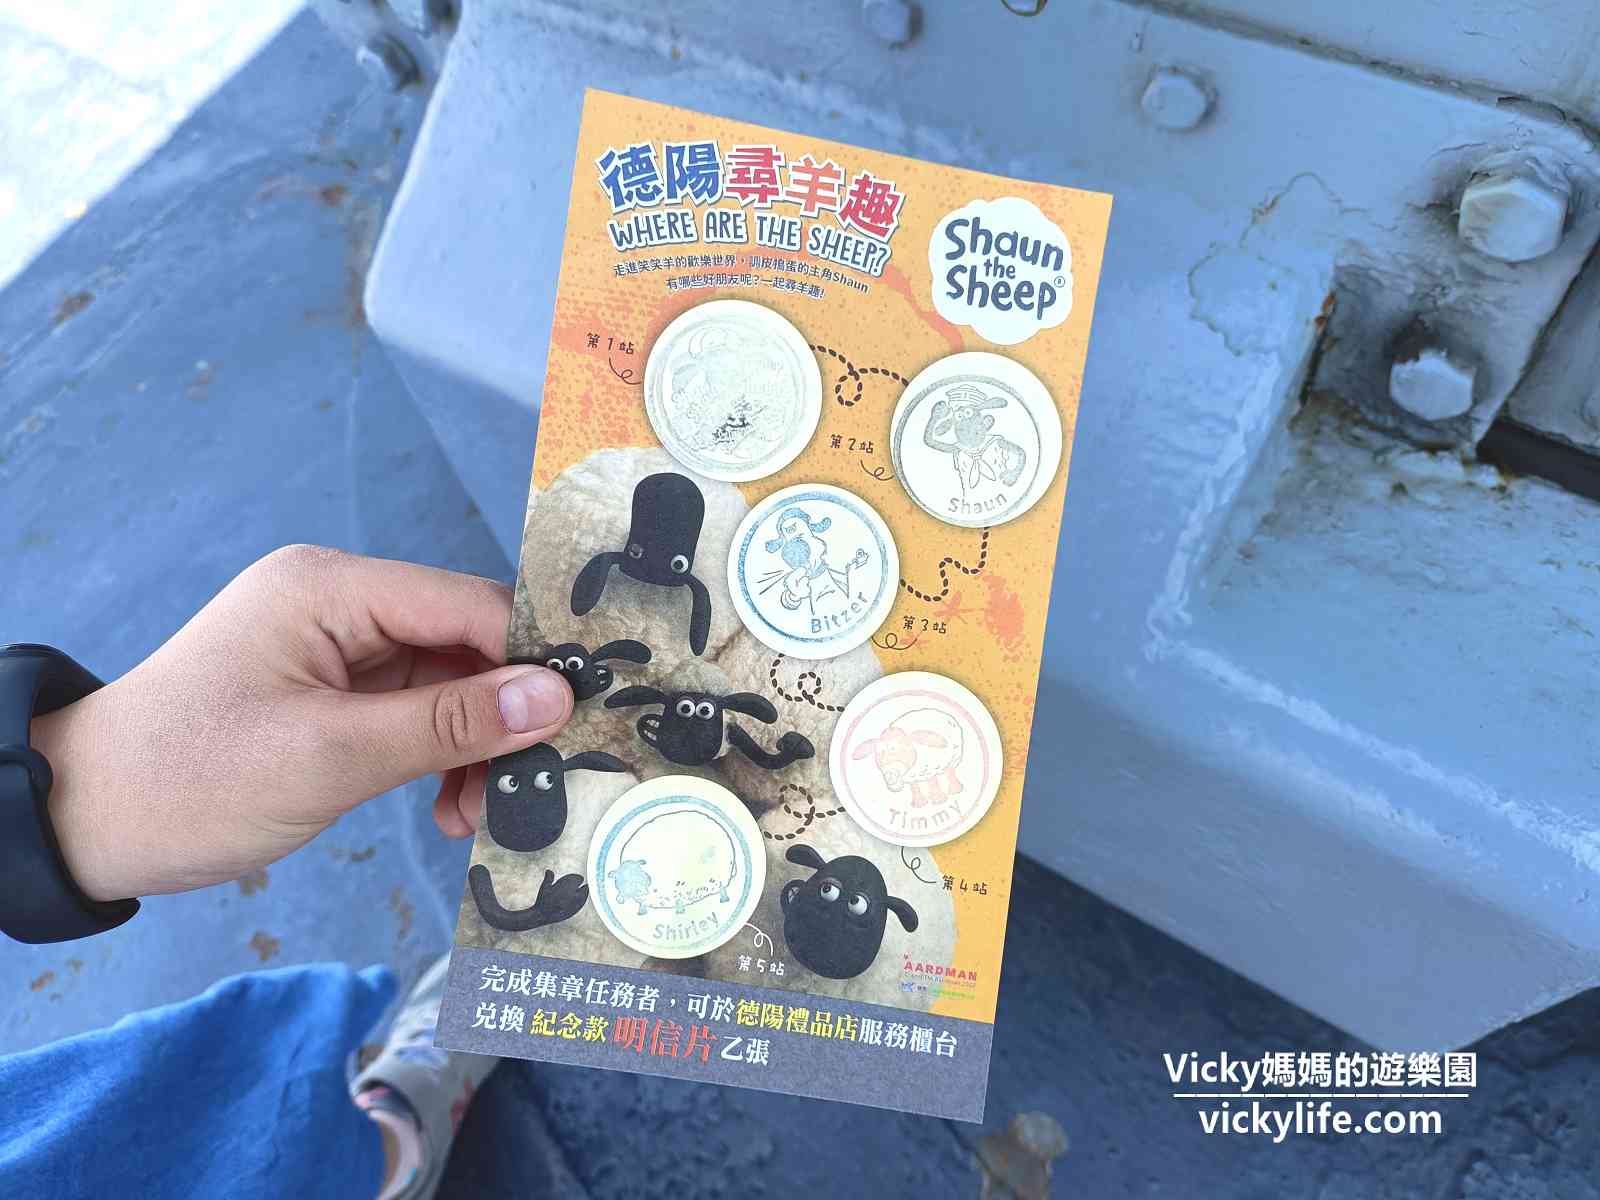 台南旅遊︱台南景點︱安平 定情碼頭 德陽艦園區：全台唯一軍艦博物館，現在換笑笑羊登場啦！(2023年11月更新)